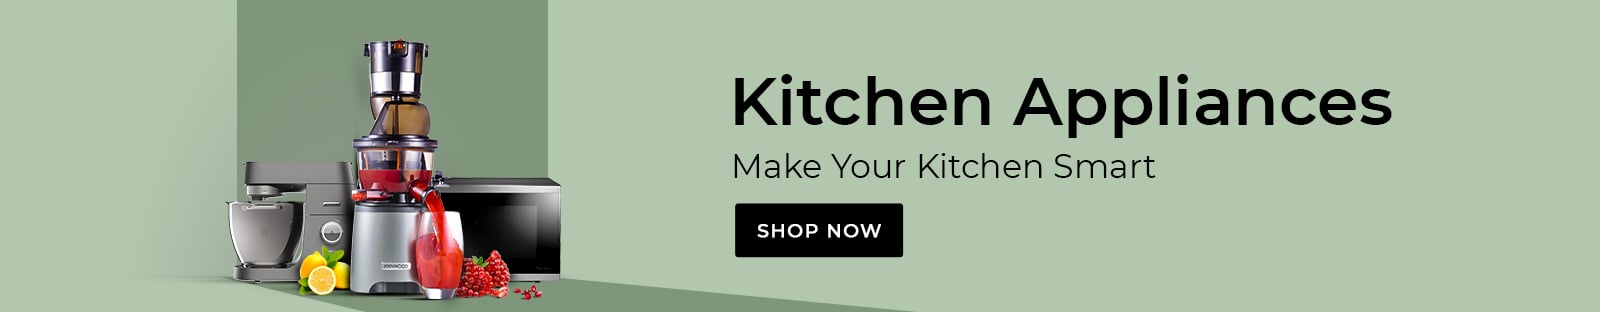 kitchen-applinces-1600x312.jpg